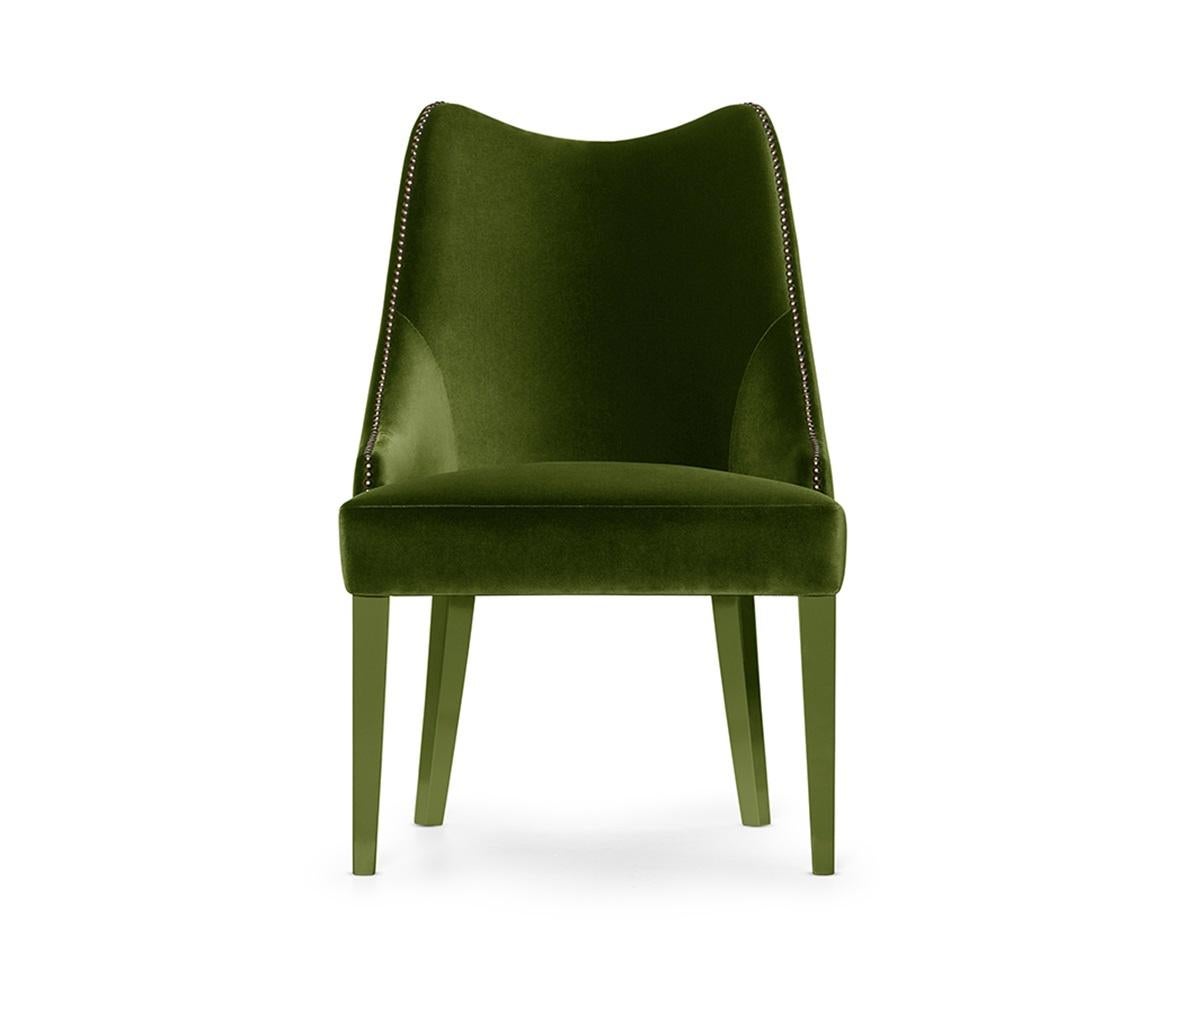 Dieser Sessel ist der Inbegriff für ein Design, das Gelassenheit vermittelt. Mit seiner umhüllenden Silhouette und dem luxuriösen, tiefen Sitz passen sich die sinnlichen Kurven und die bequeme Rückenlehne perfekt an den Körper an. Die Nägel, die die